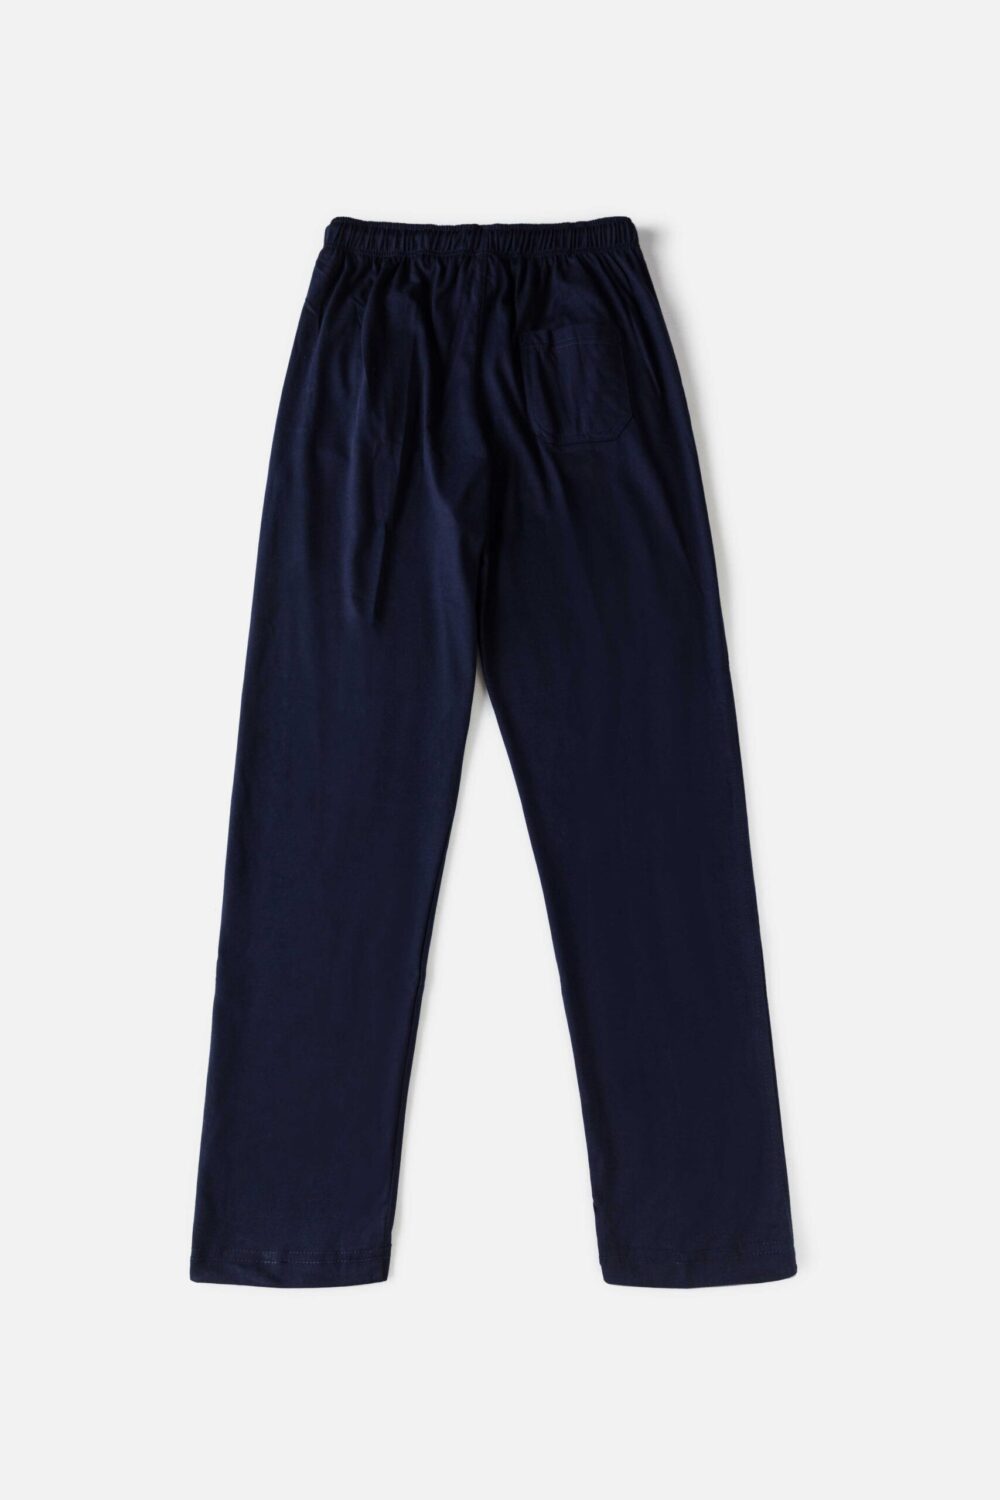 UA Premium Cotton Trouser – Navy Blue